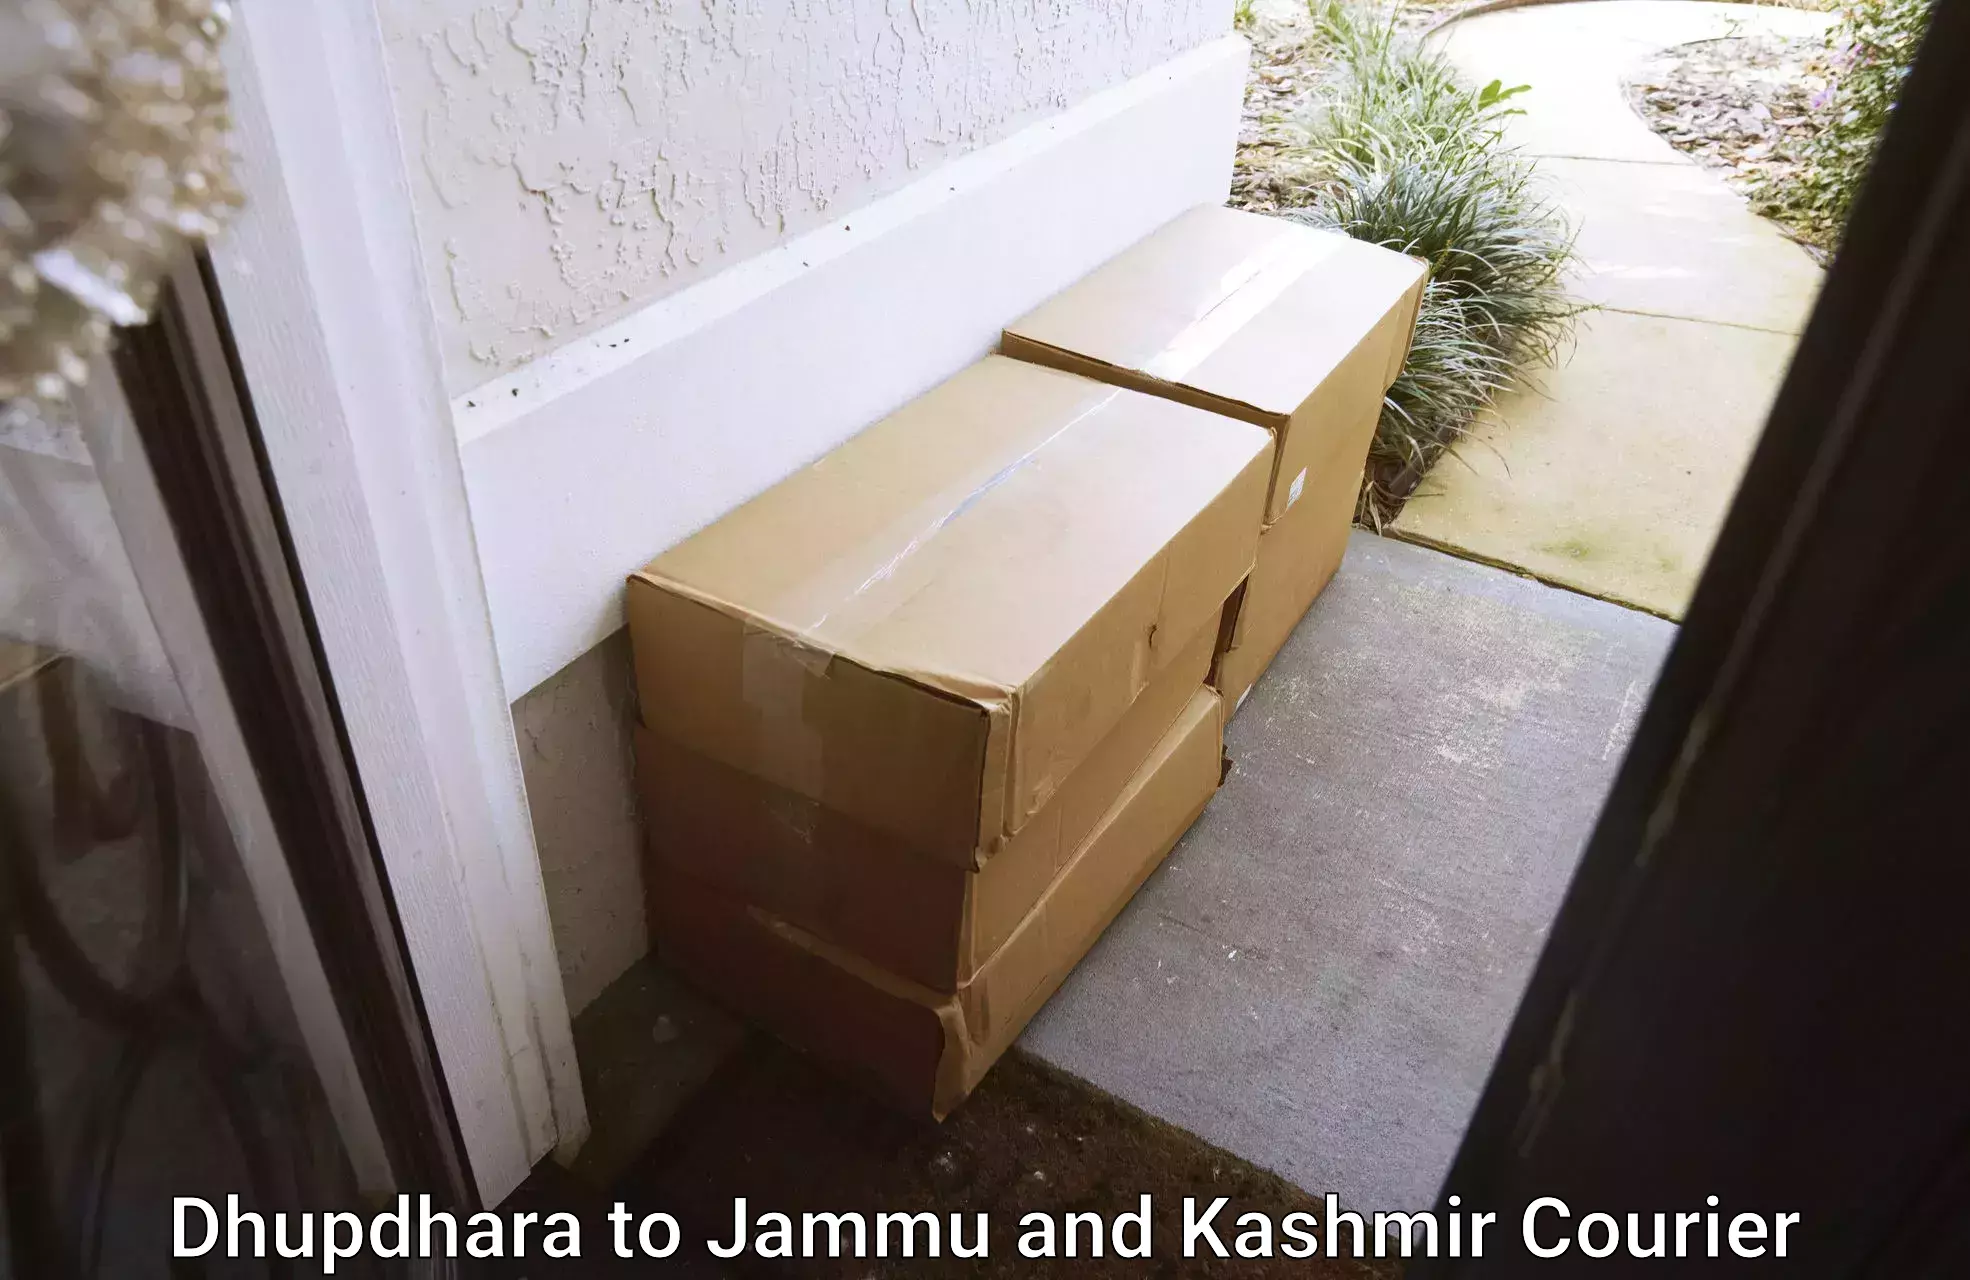 Dynamic courier operations Dhupdhara to Srinagar Kashmir